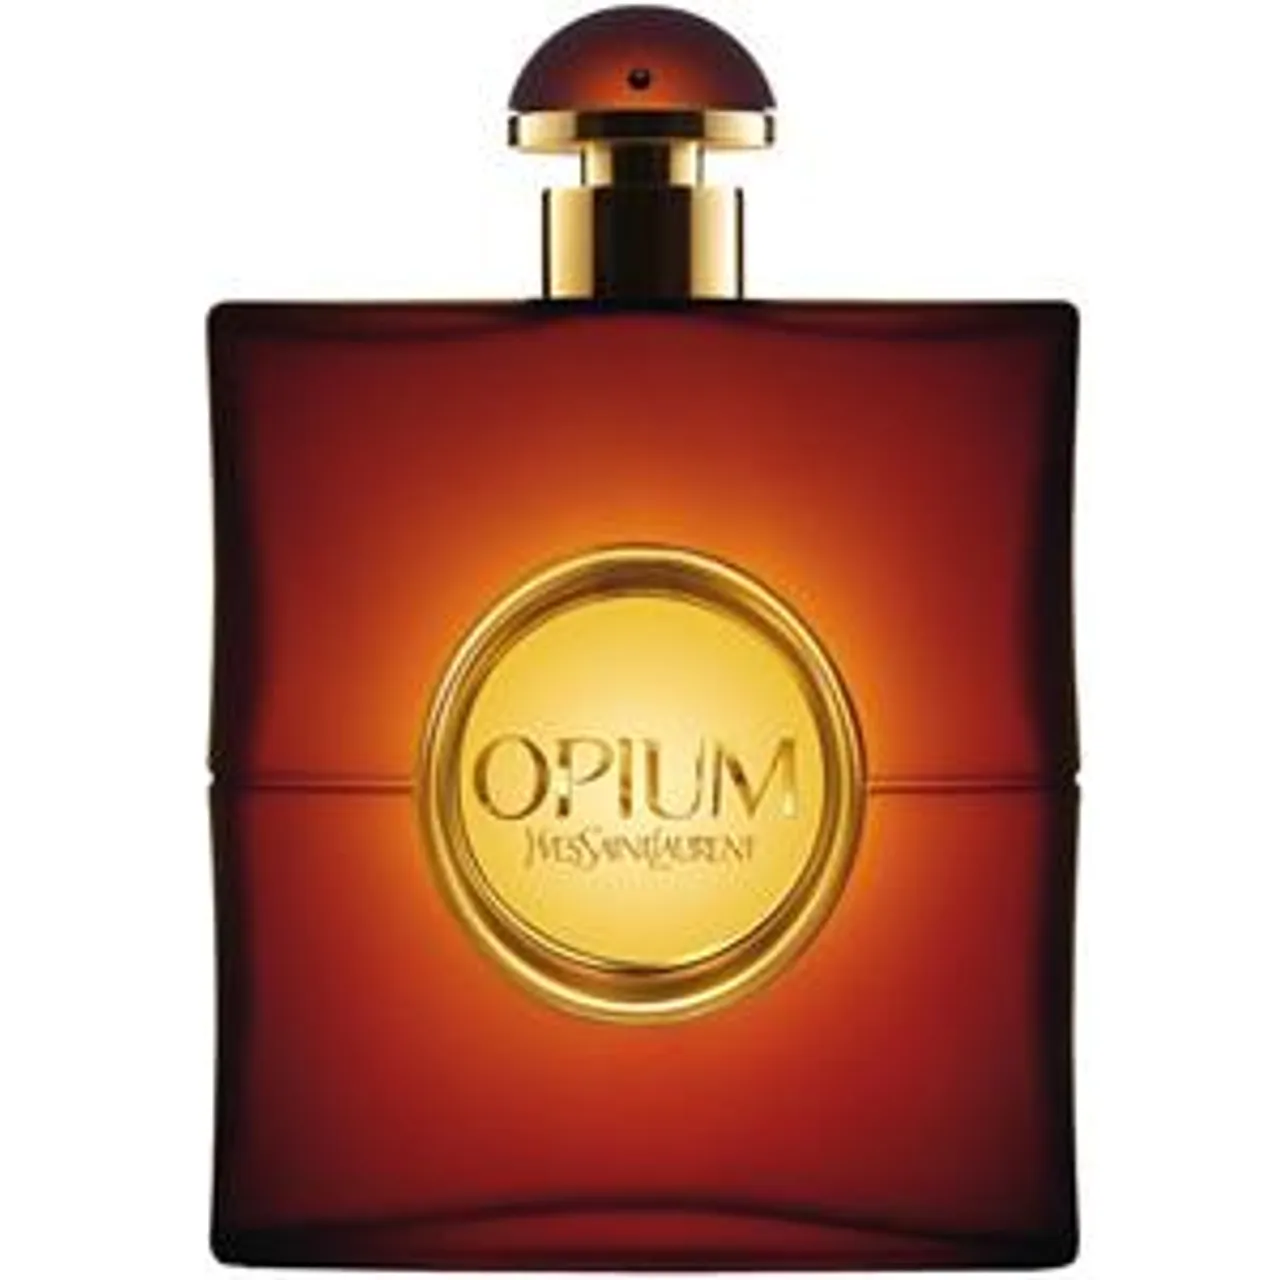 Yves Saint Laurent Opium Femme Eau de Toilette Spray Parfum Damen